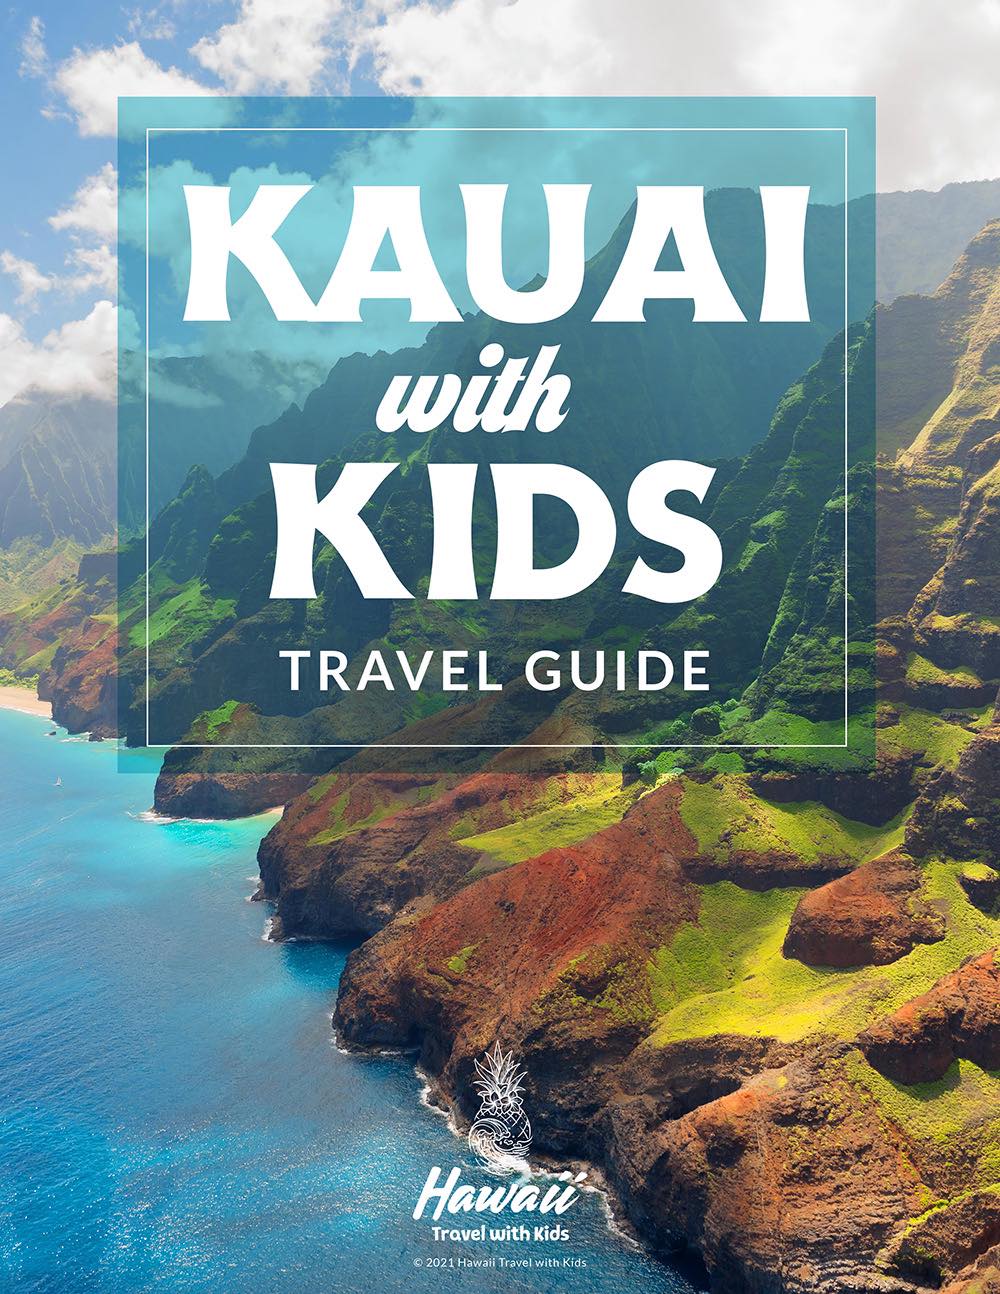 Kauai with Kids Travel Guide